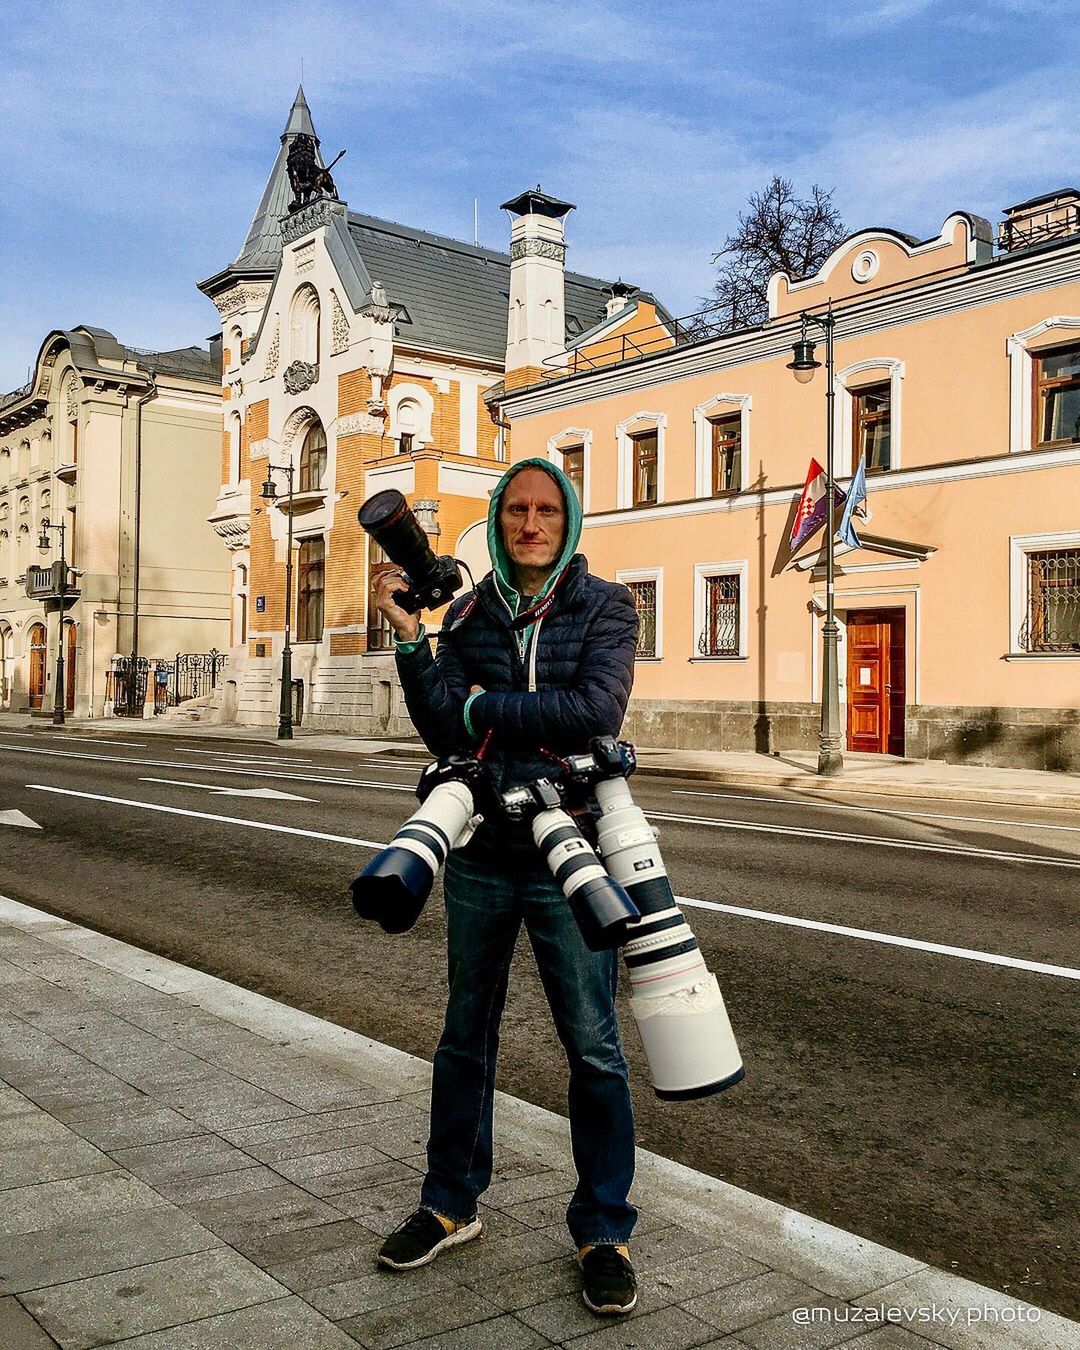 Если вам кажется, что Суздаль - город-сказка, то работы Игоря Музалевского заставят вас уронить на пол челюсть. Московский фотограф дополняет реальность фантастическими сюжетами.